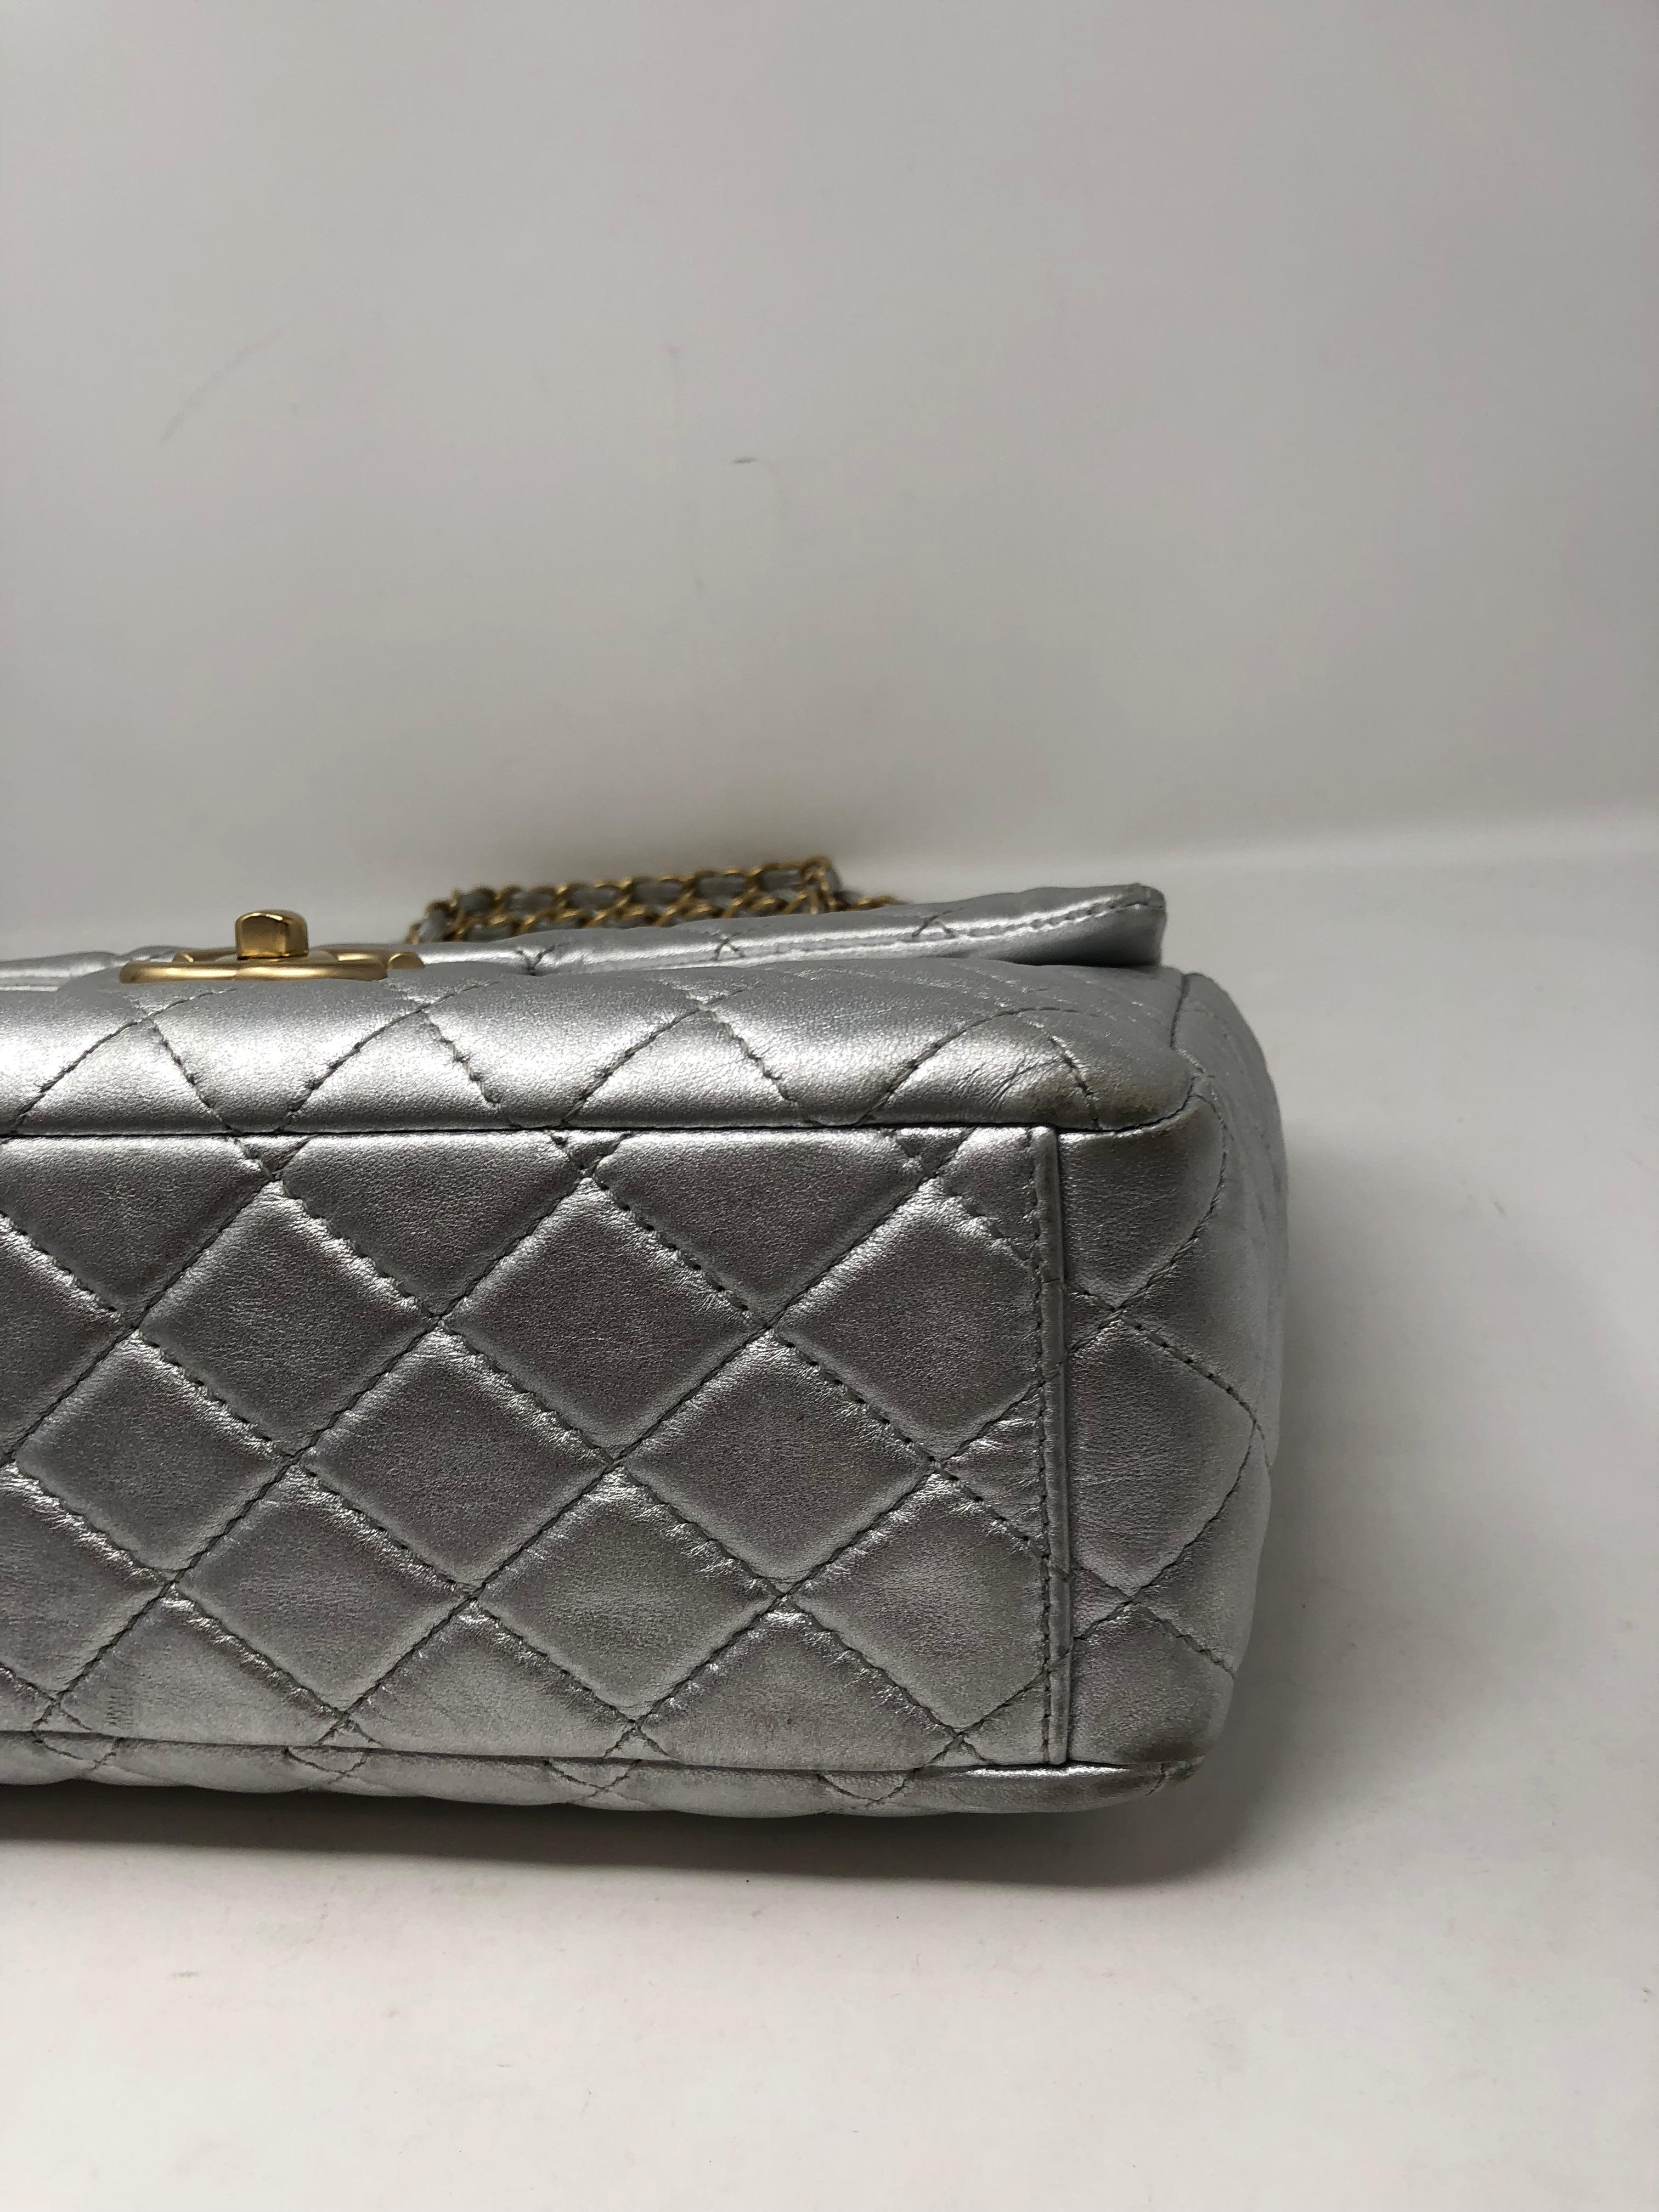 Chanel Silver Metallic Jumbo Bag 13